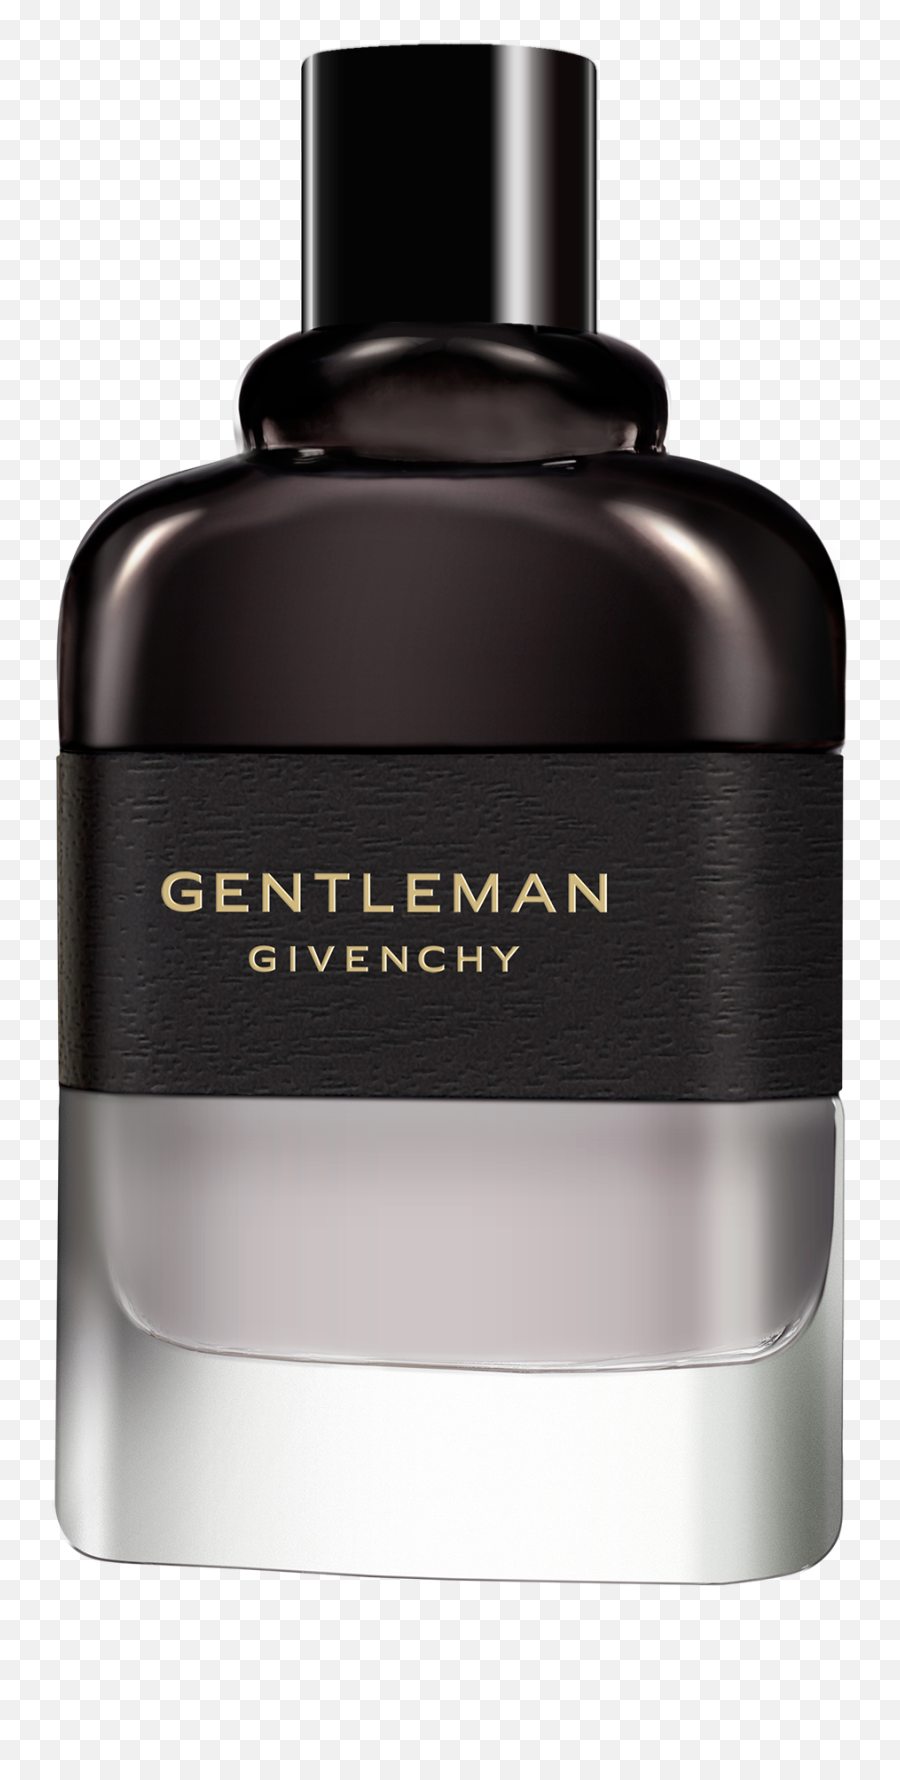 Gentleman Givenchy U2022 Eau De Parfum Boisée - Givenchy Gentleman Boisee Eau De Parfum Png,Gentleman Png